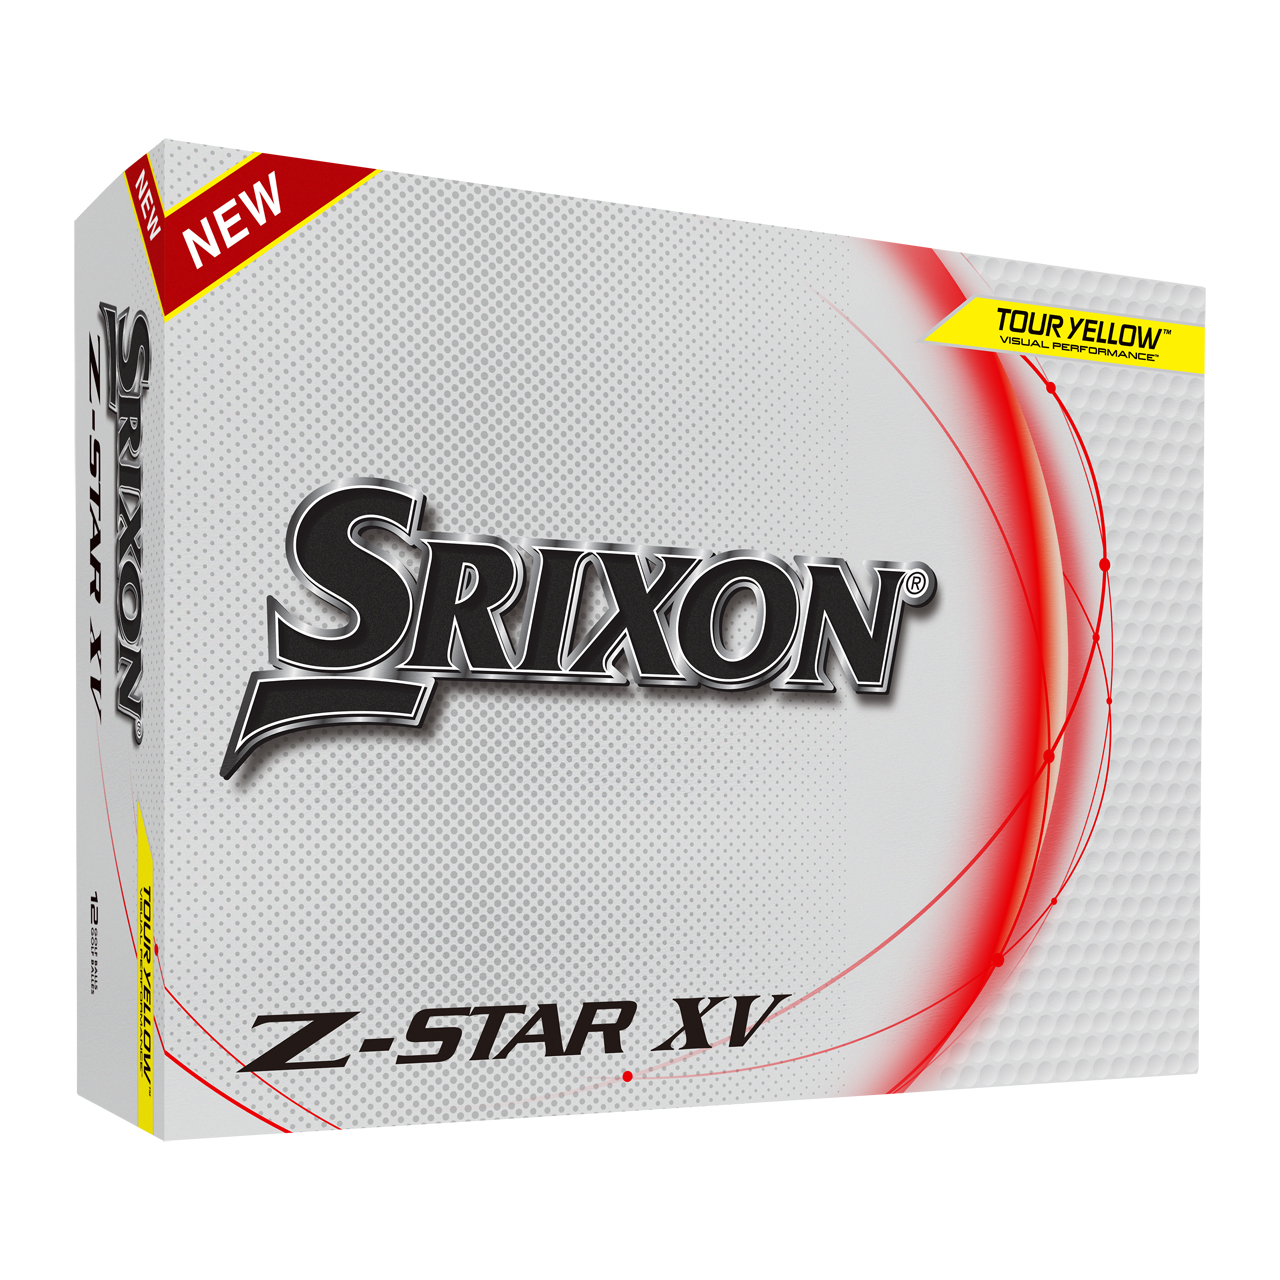 Z-Star XV 8, Bälle 3-Pack - ye